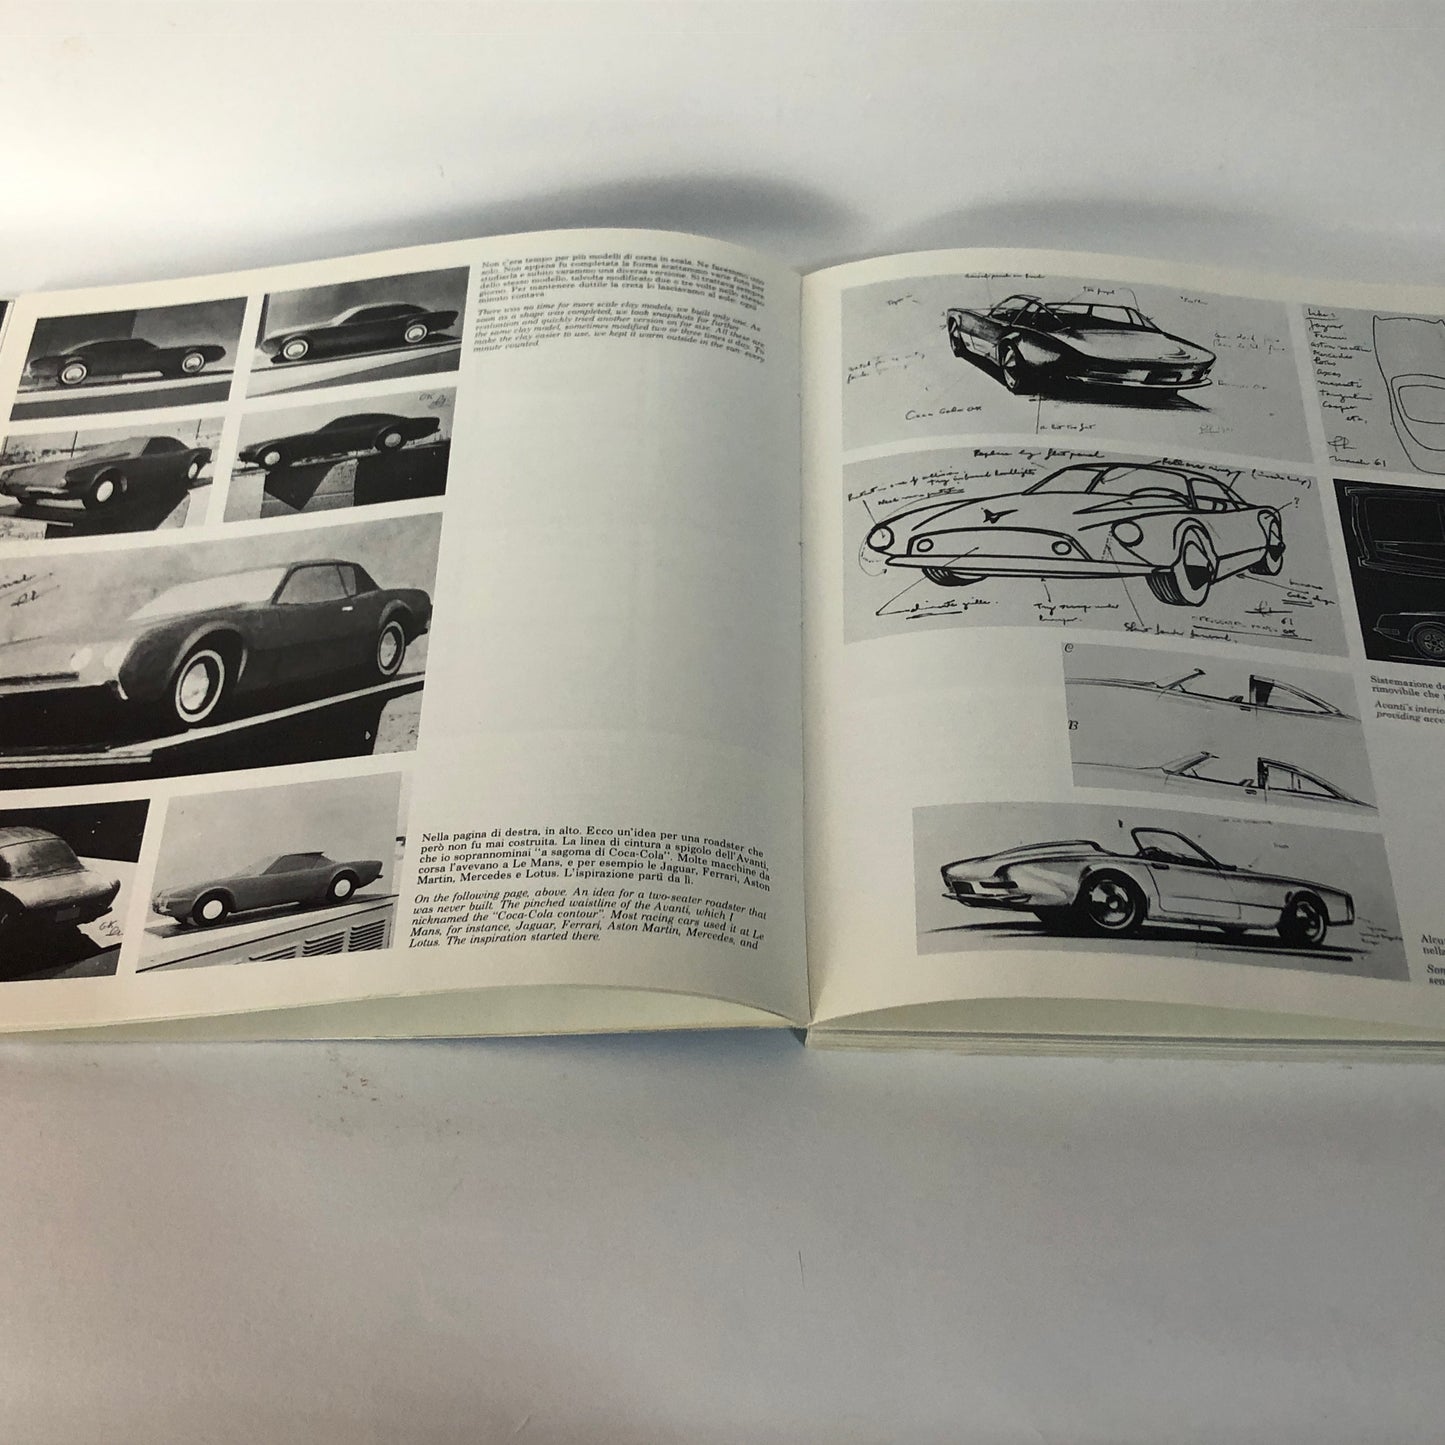 Automobilia, Books Le Grandi Automobili - The Great Cars, quarterly magazine from the 1980s